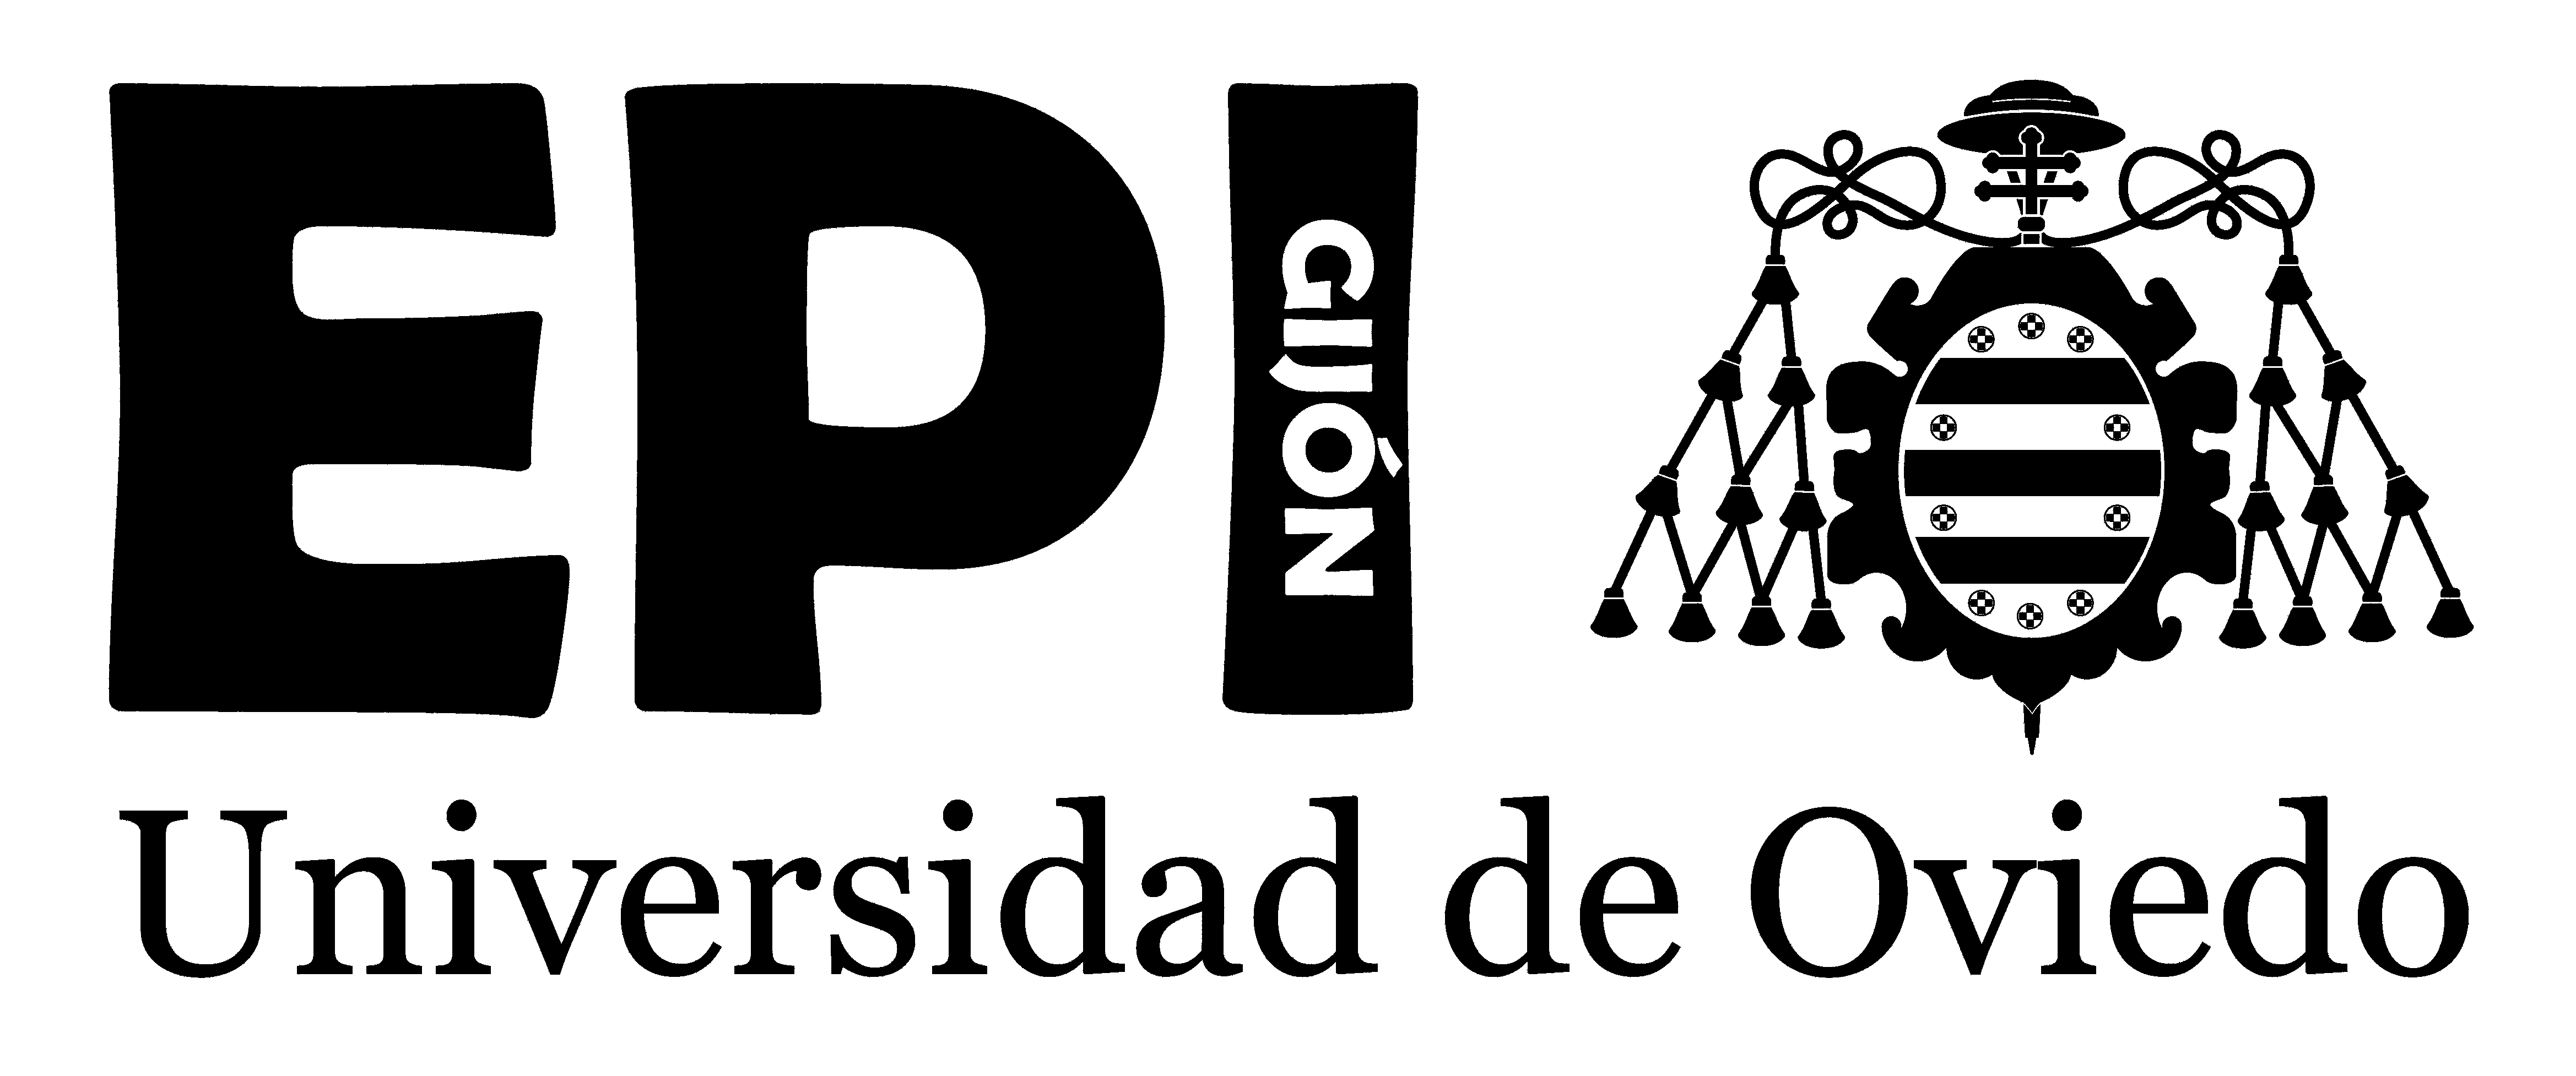 logo epi 2013 blanco sobre transparente horizontal